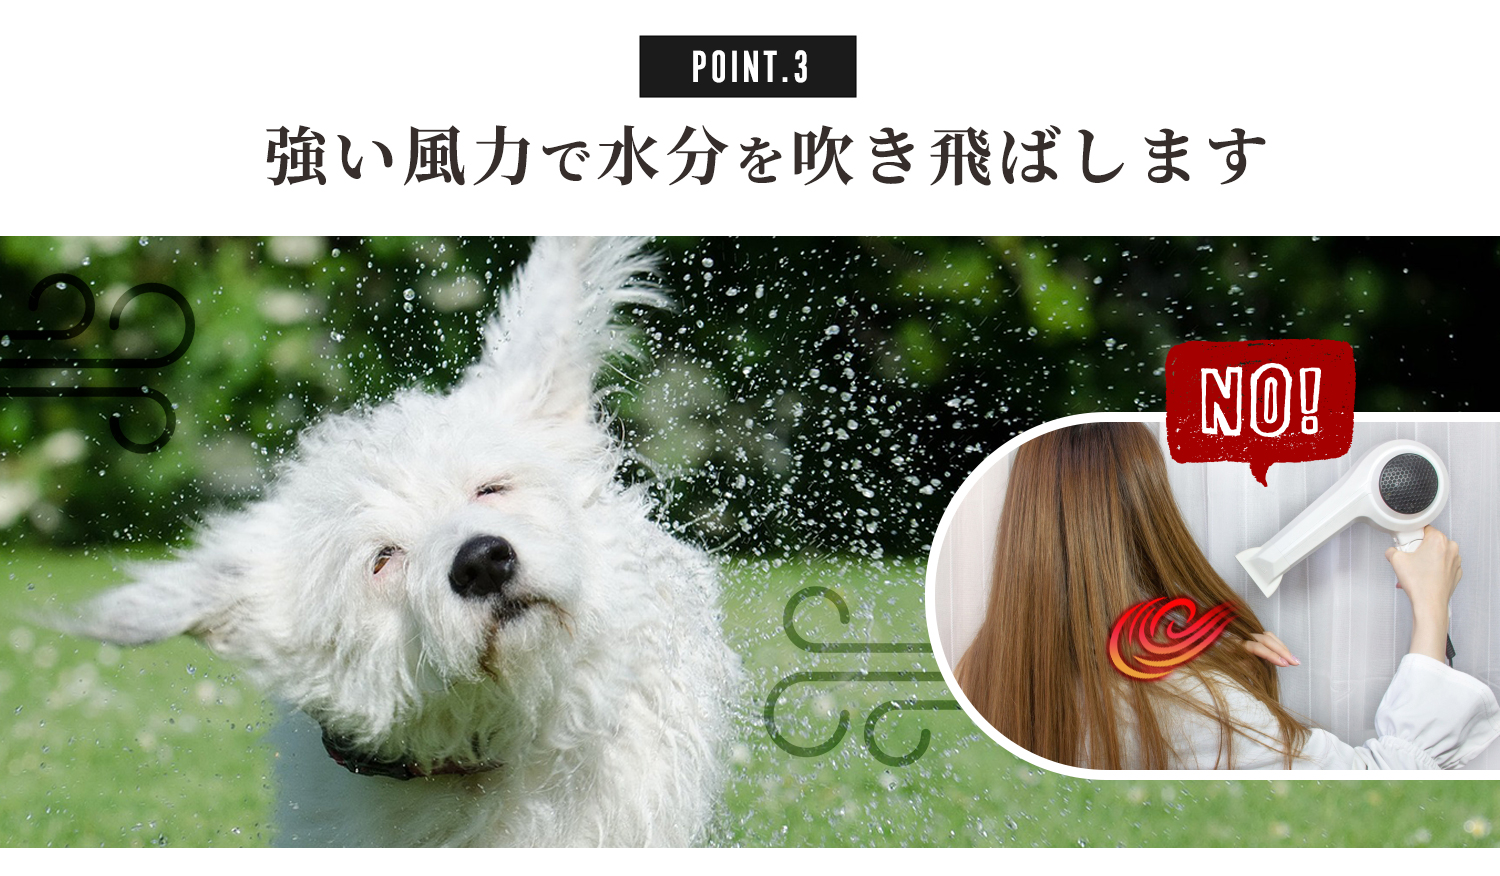 犬 ドライヤー「メガブローZ」(風量・温度無段階調節) メガブローより風が強い 業務パワー Quietスタート機能搭載 安心の日本規格 PS